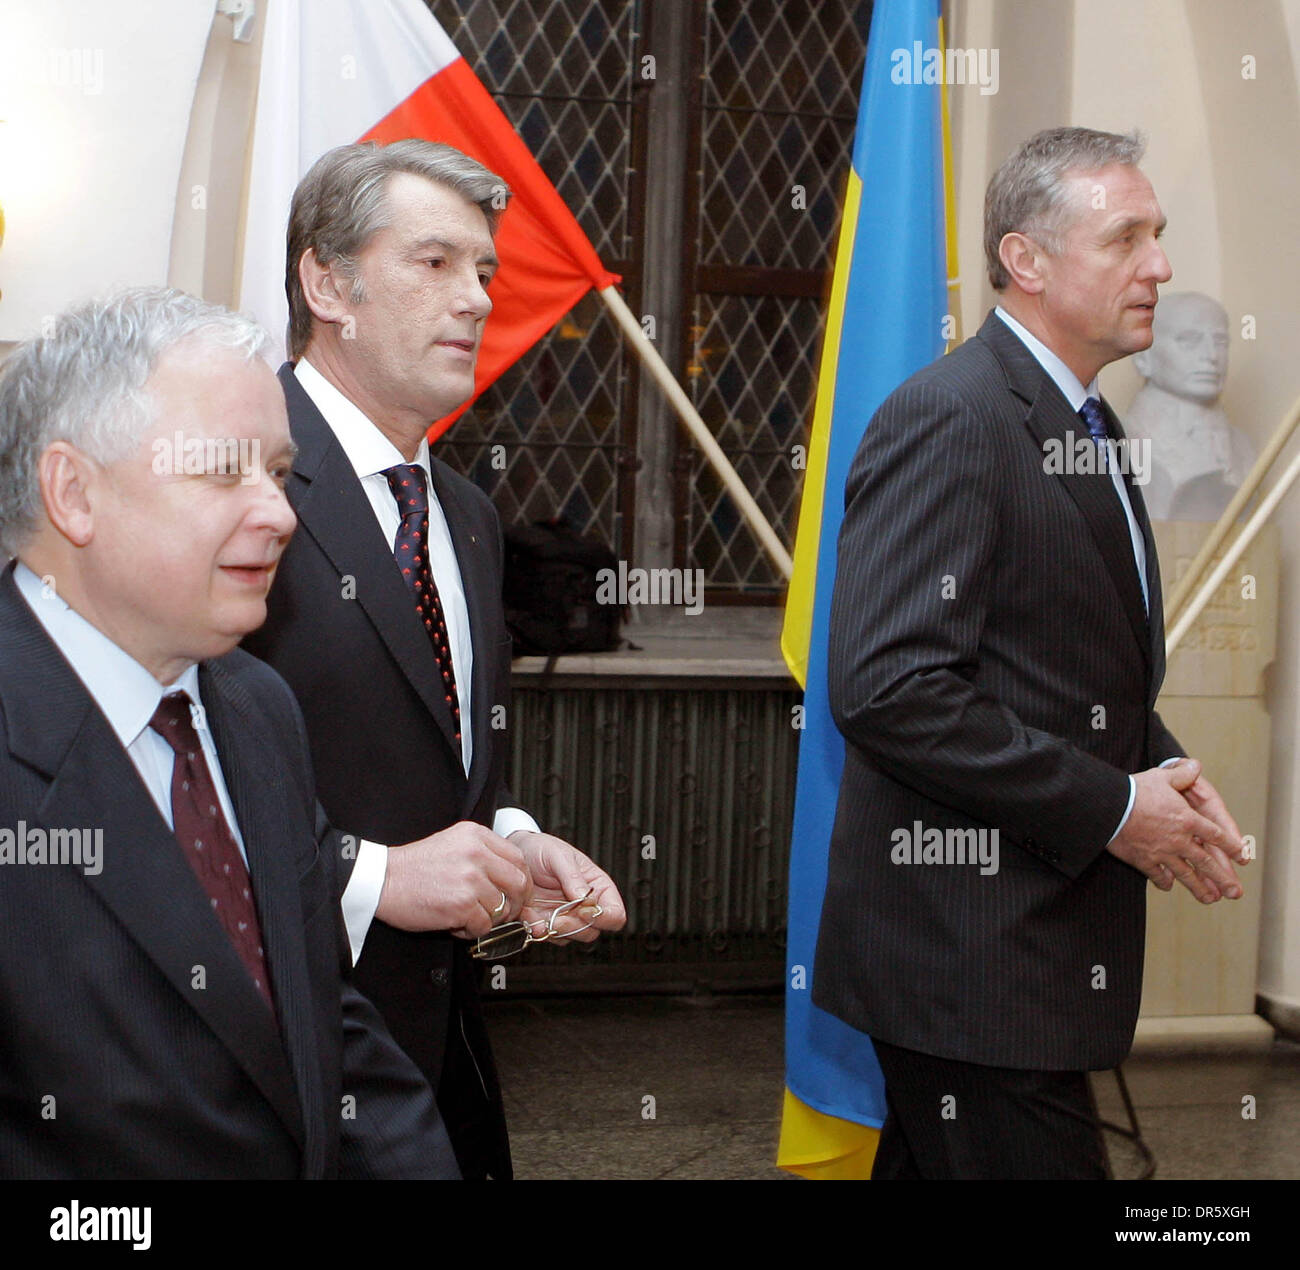 28 janv. 2009 - Wroclaw, Pologne - réunion trilatérale à Wroclaw du président ukrainien Viktor Iouchtchenko (C), Président de la Pologne Lech Kaczynski (l) et le premier ministre tchèque Mirek Topolanek (R). Lors de la réunion parties ont discuté la coopération trilatérale en matière de sécurité énergétique, et de l'intégration européenne de l'Ukraine. (Crédit Image : © PhotoXpress/ZUMA Press) RESTRICTIONS : * Amérique du Nord et du Sud Banque D'Images